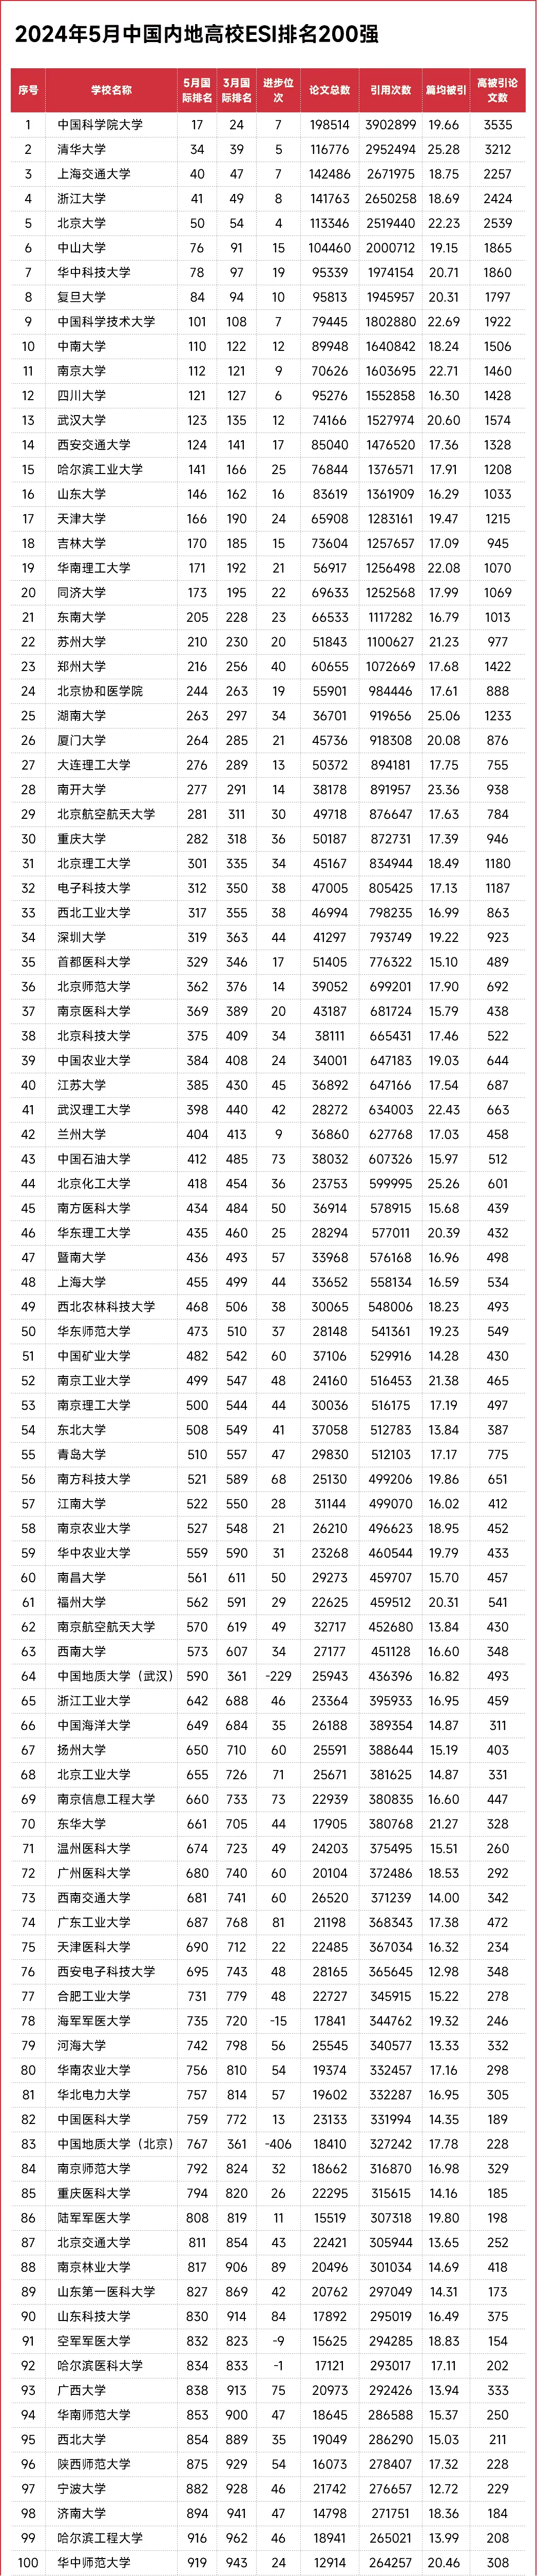 2024年5月中国内地高校ESI排名200强